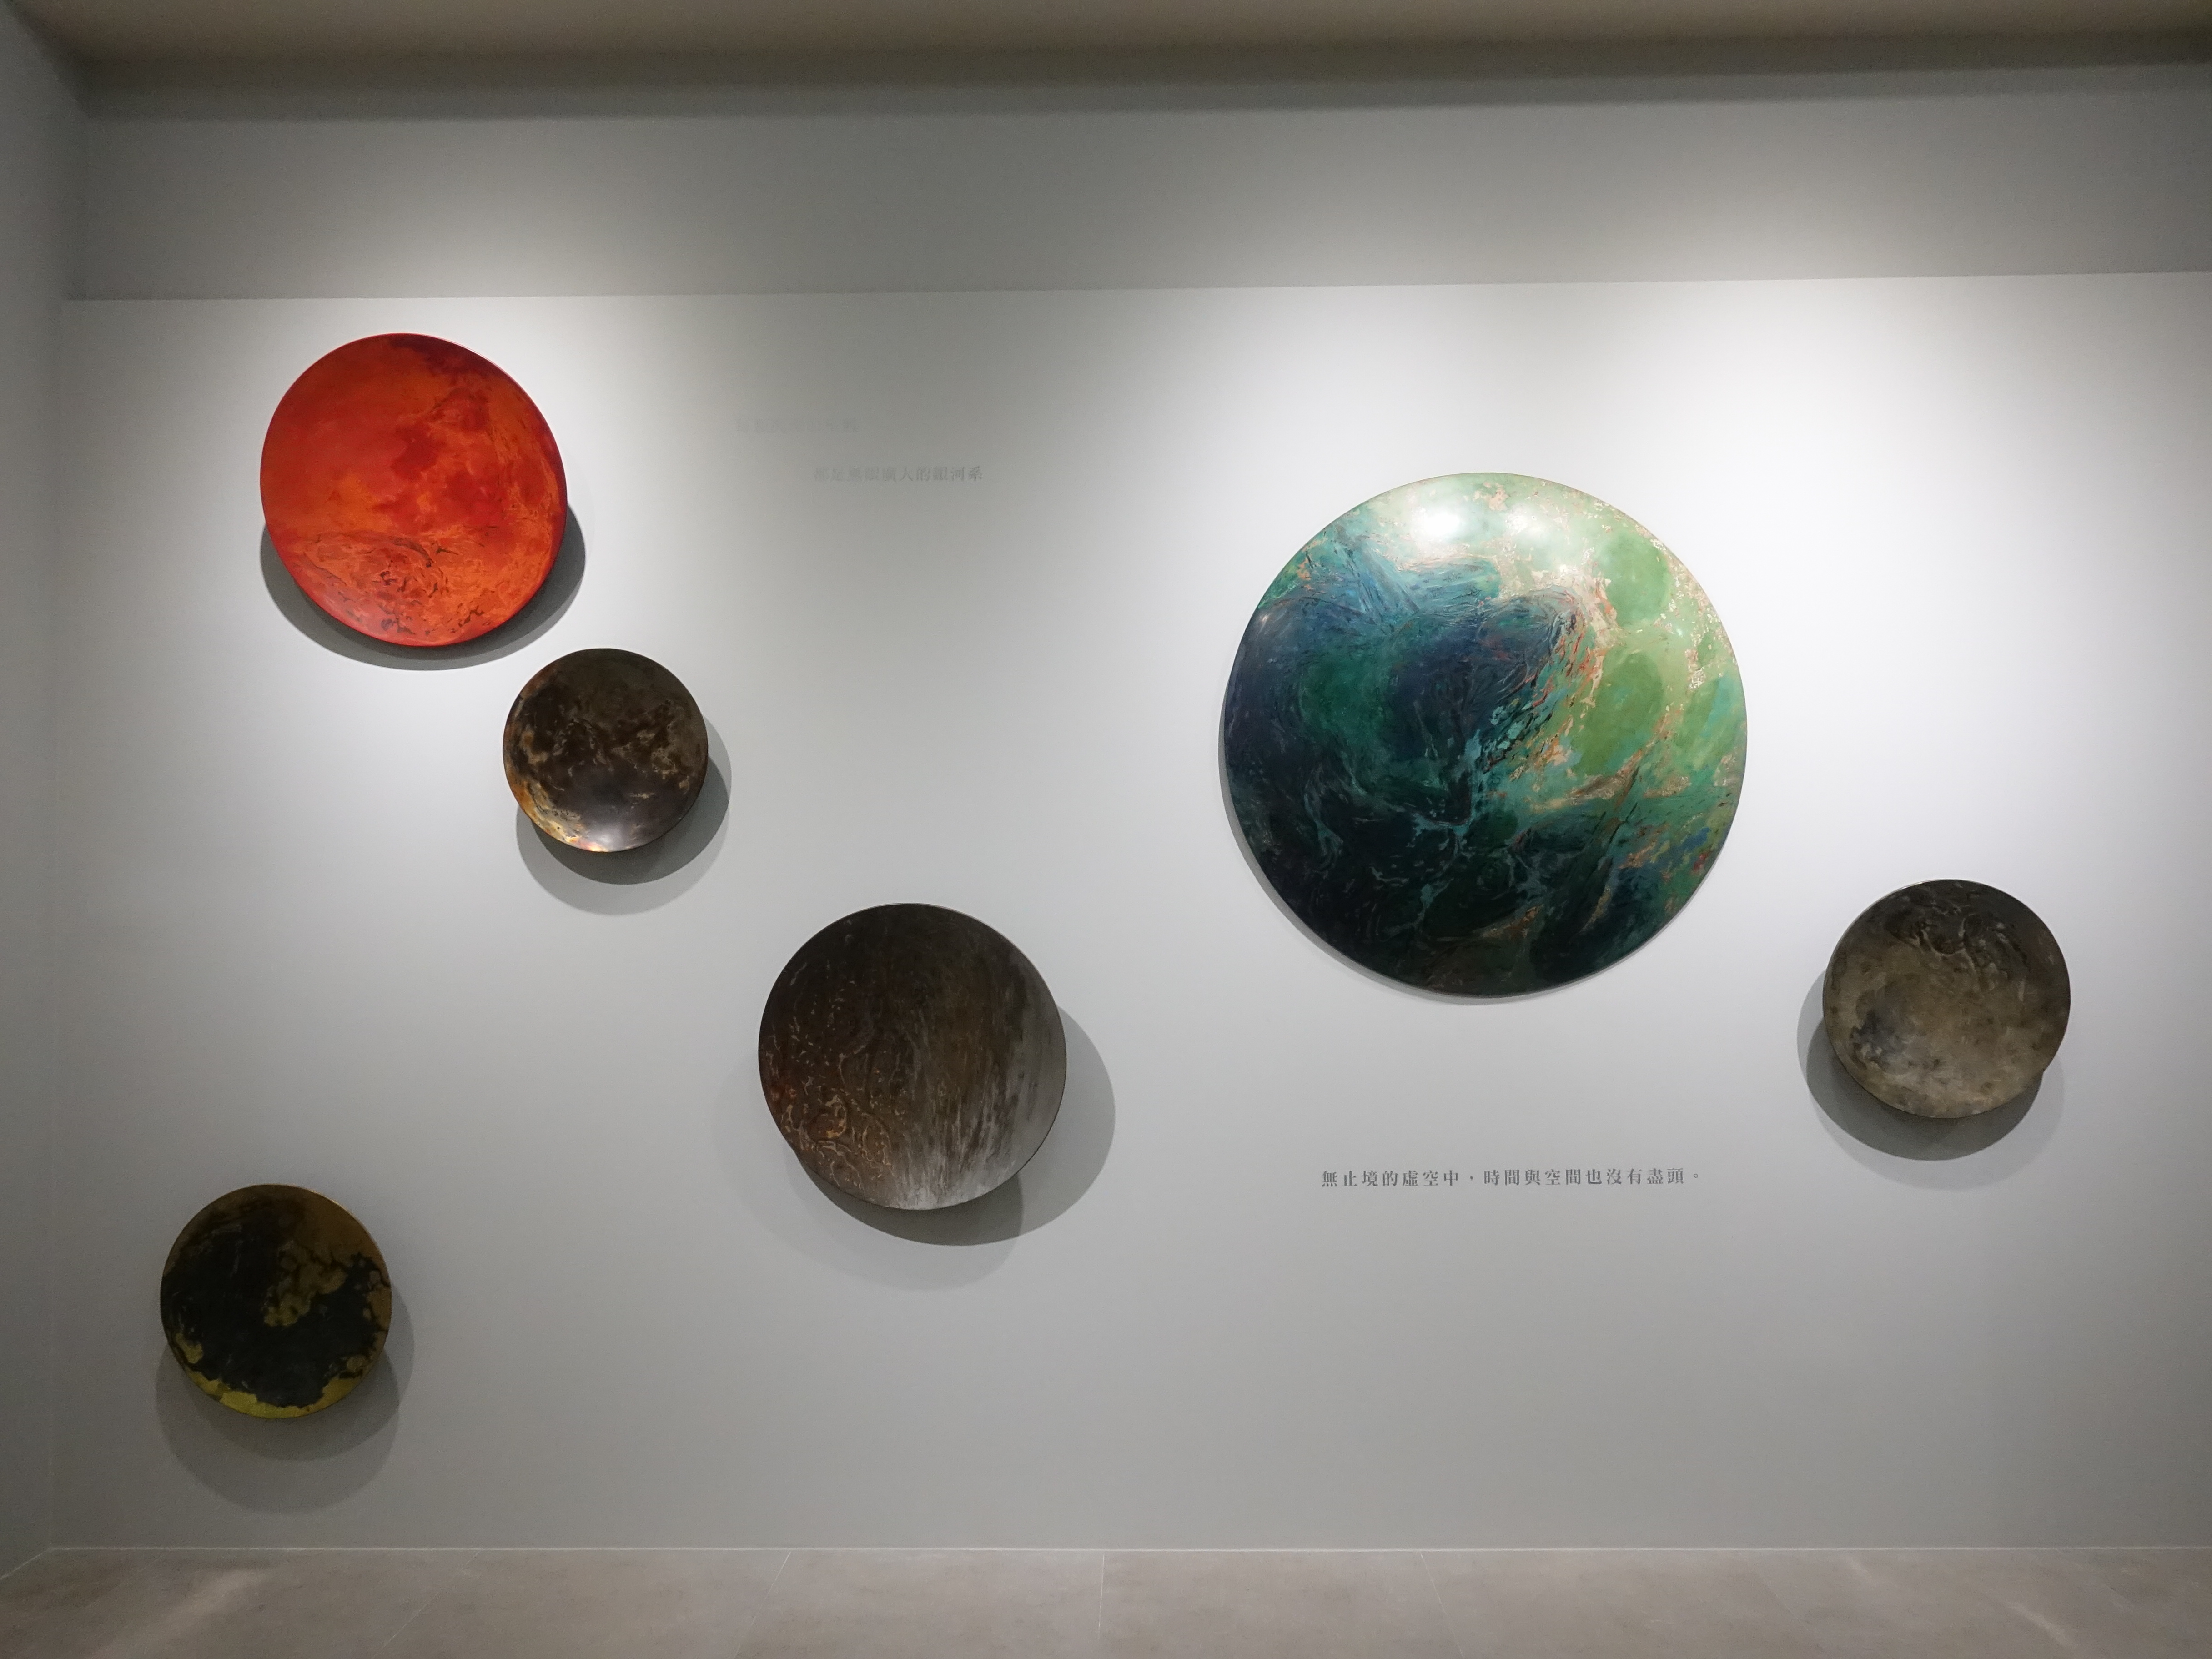 越南藝術家阮春綠於正觀藝術展出《微塵系列》作品。